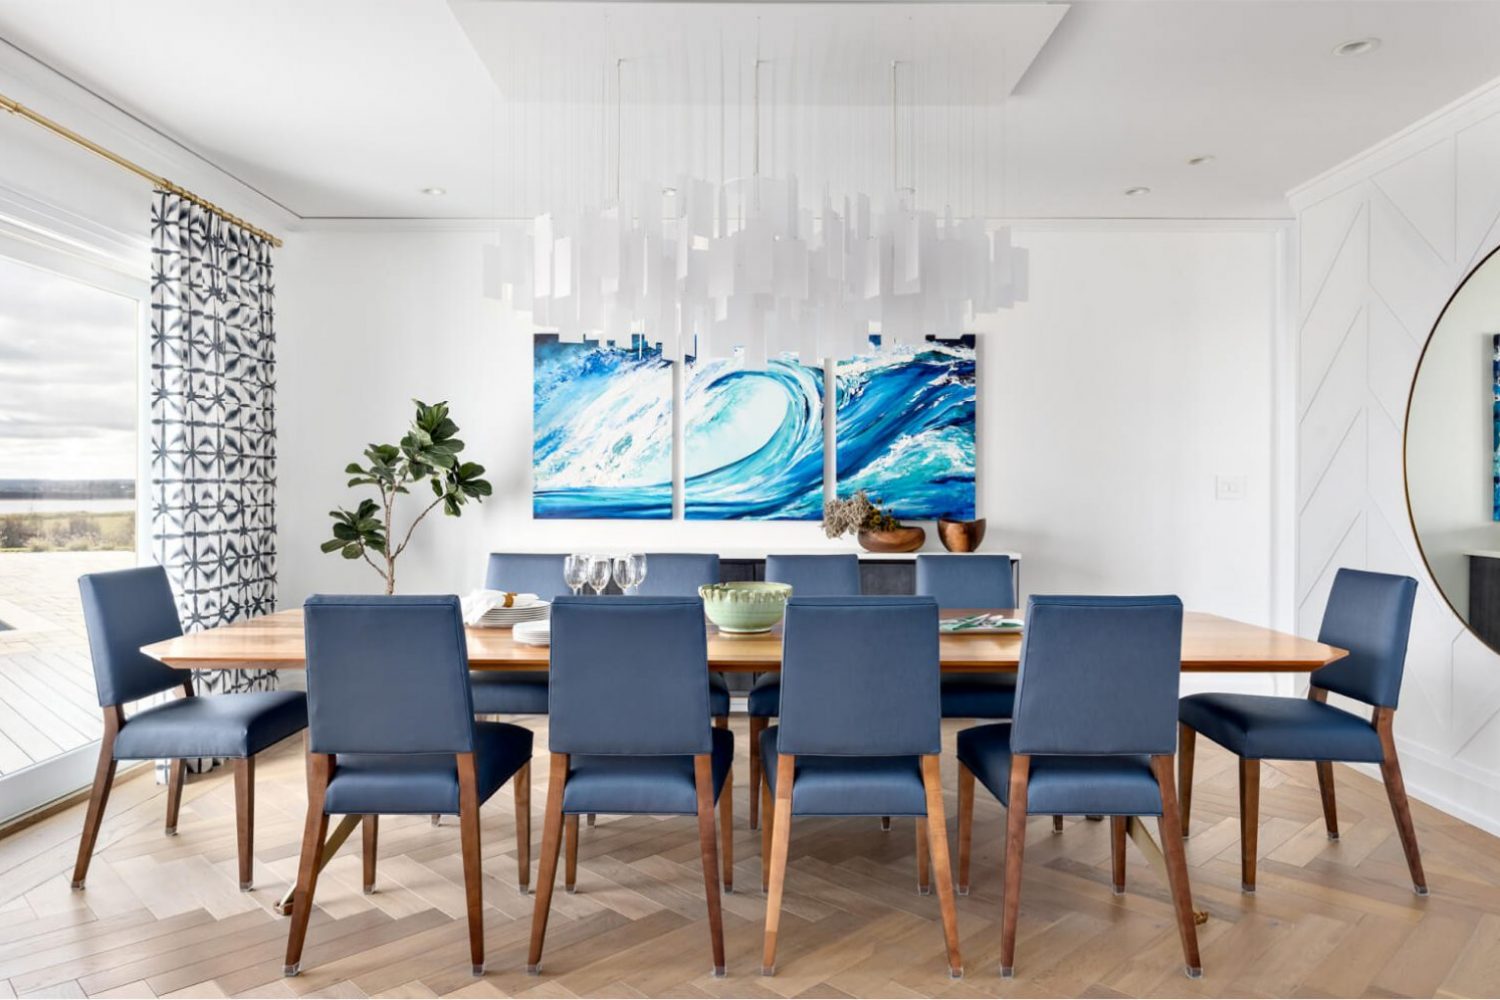 Prince Edward Island Estate Simply Home Decorating Interior Design Portfolio